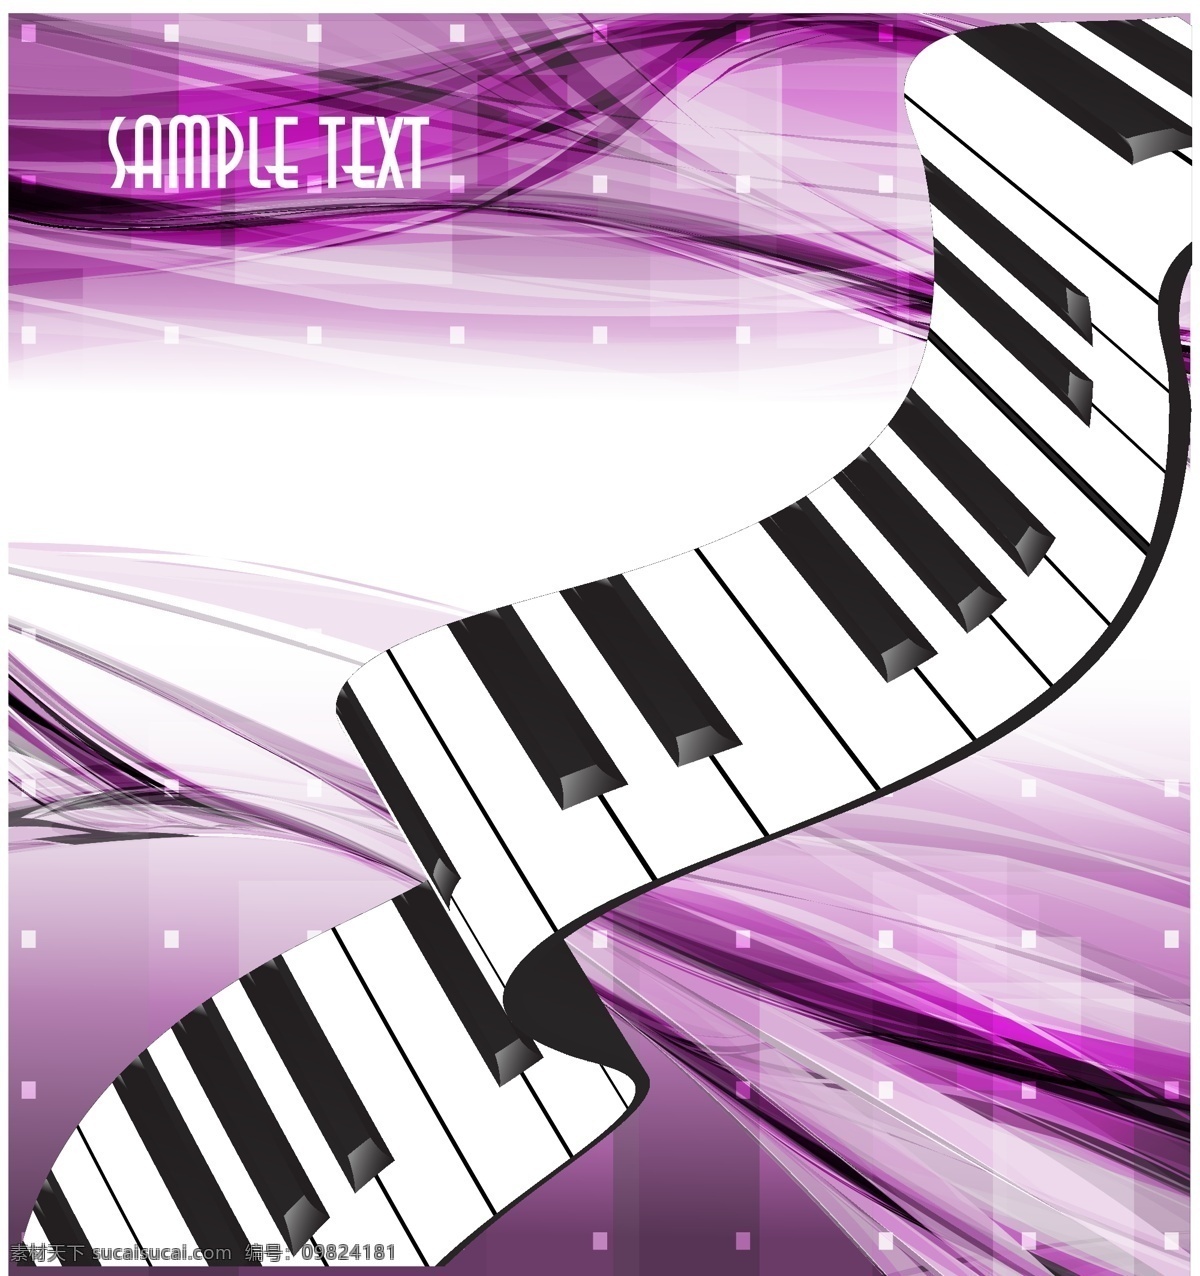 钢琴 按键 绚丽 背景 紫色 动感 矢量素材 音符 音乐 矢量图